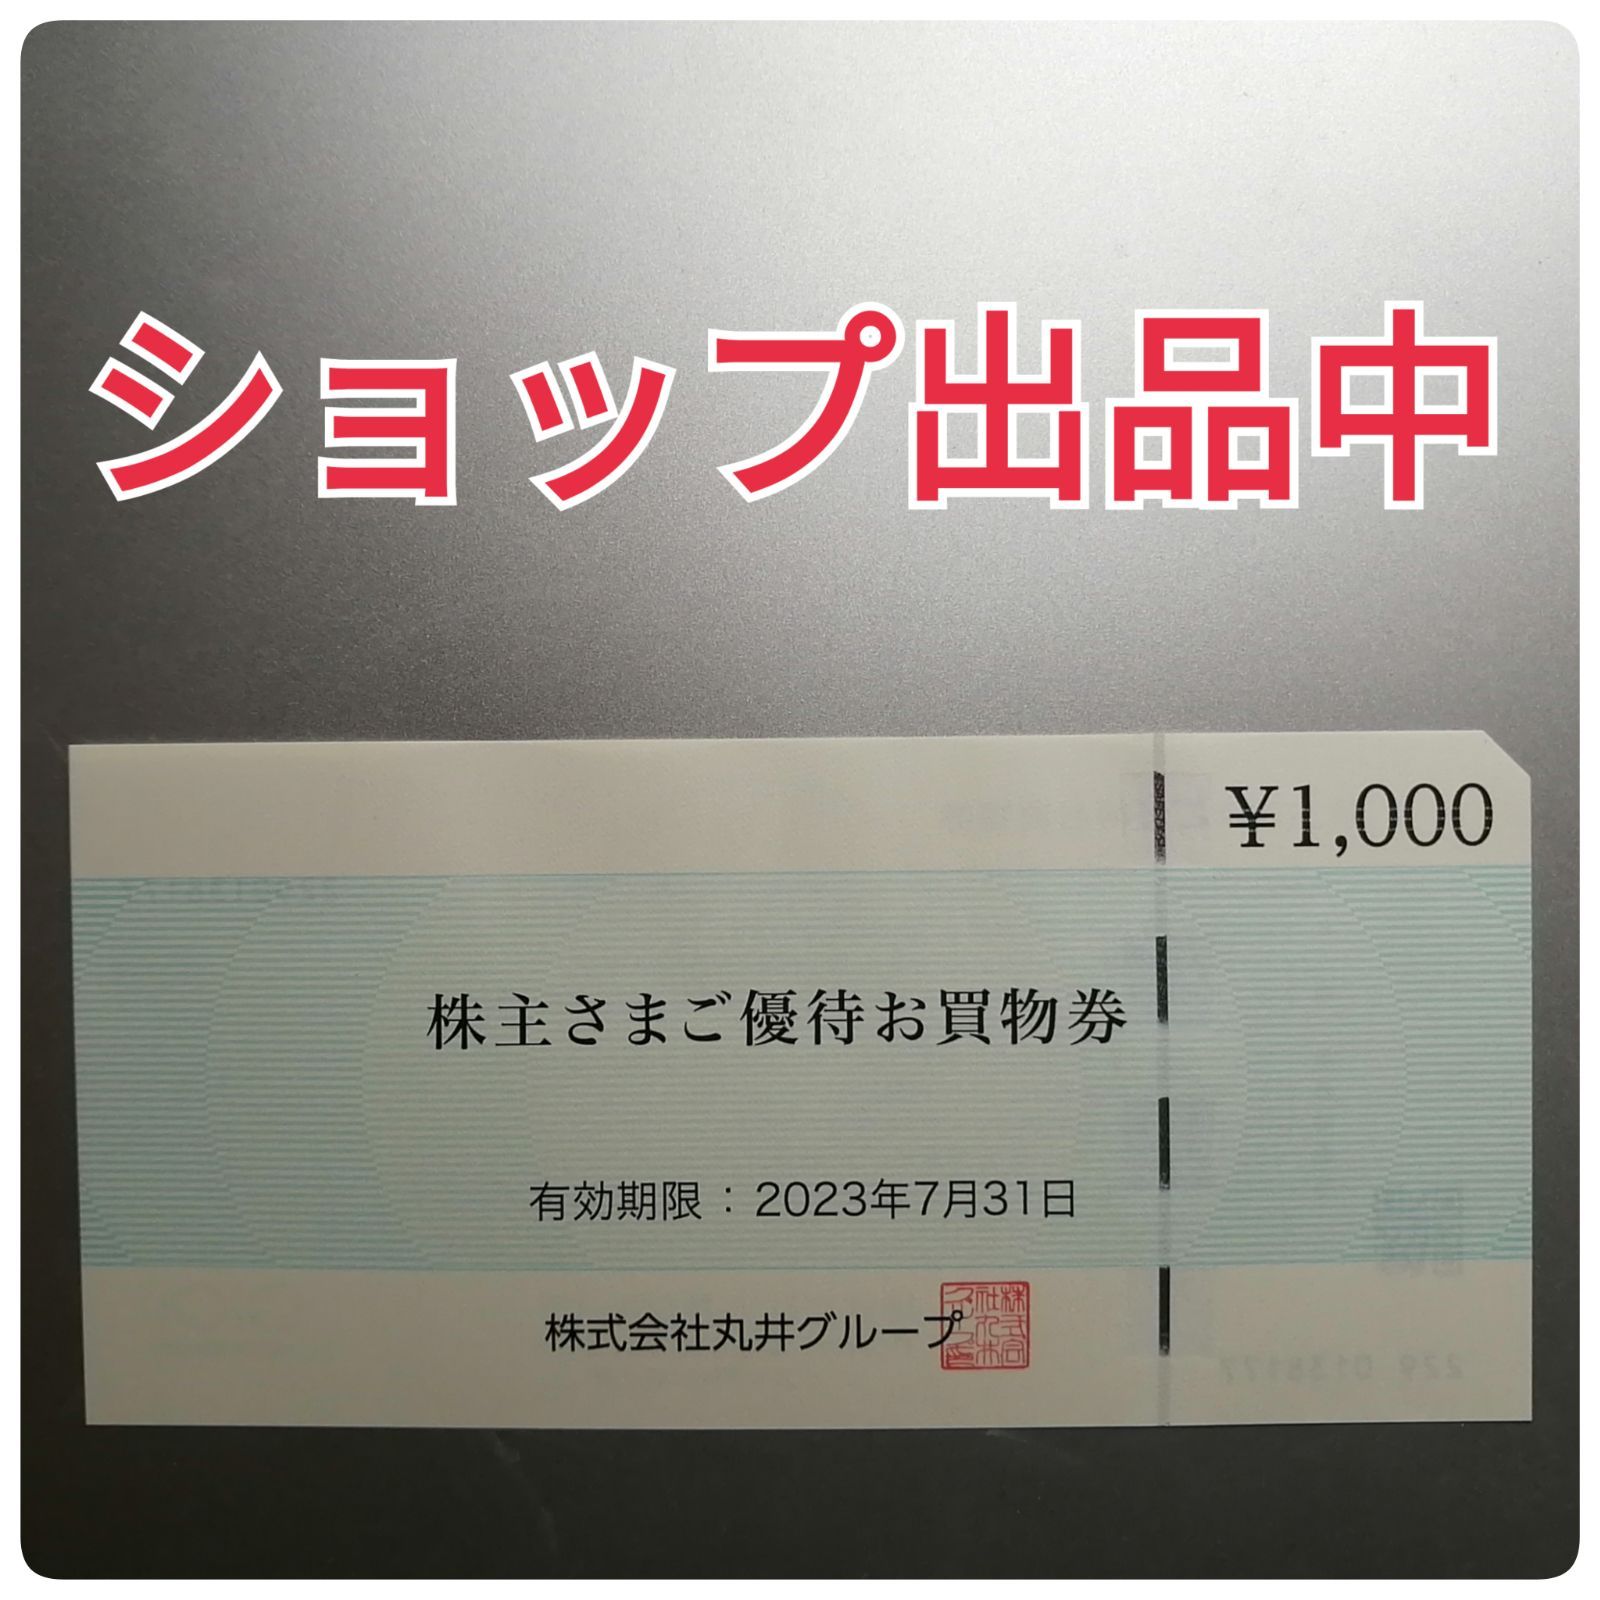 マルイ 丸井 株主優待 1000円分 - 良品屋 - メルカリ